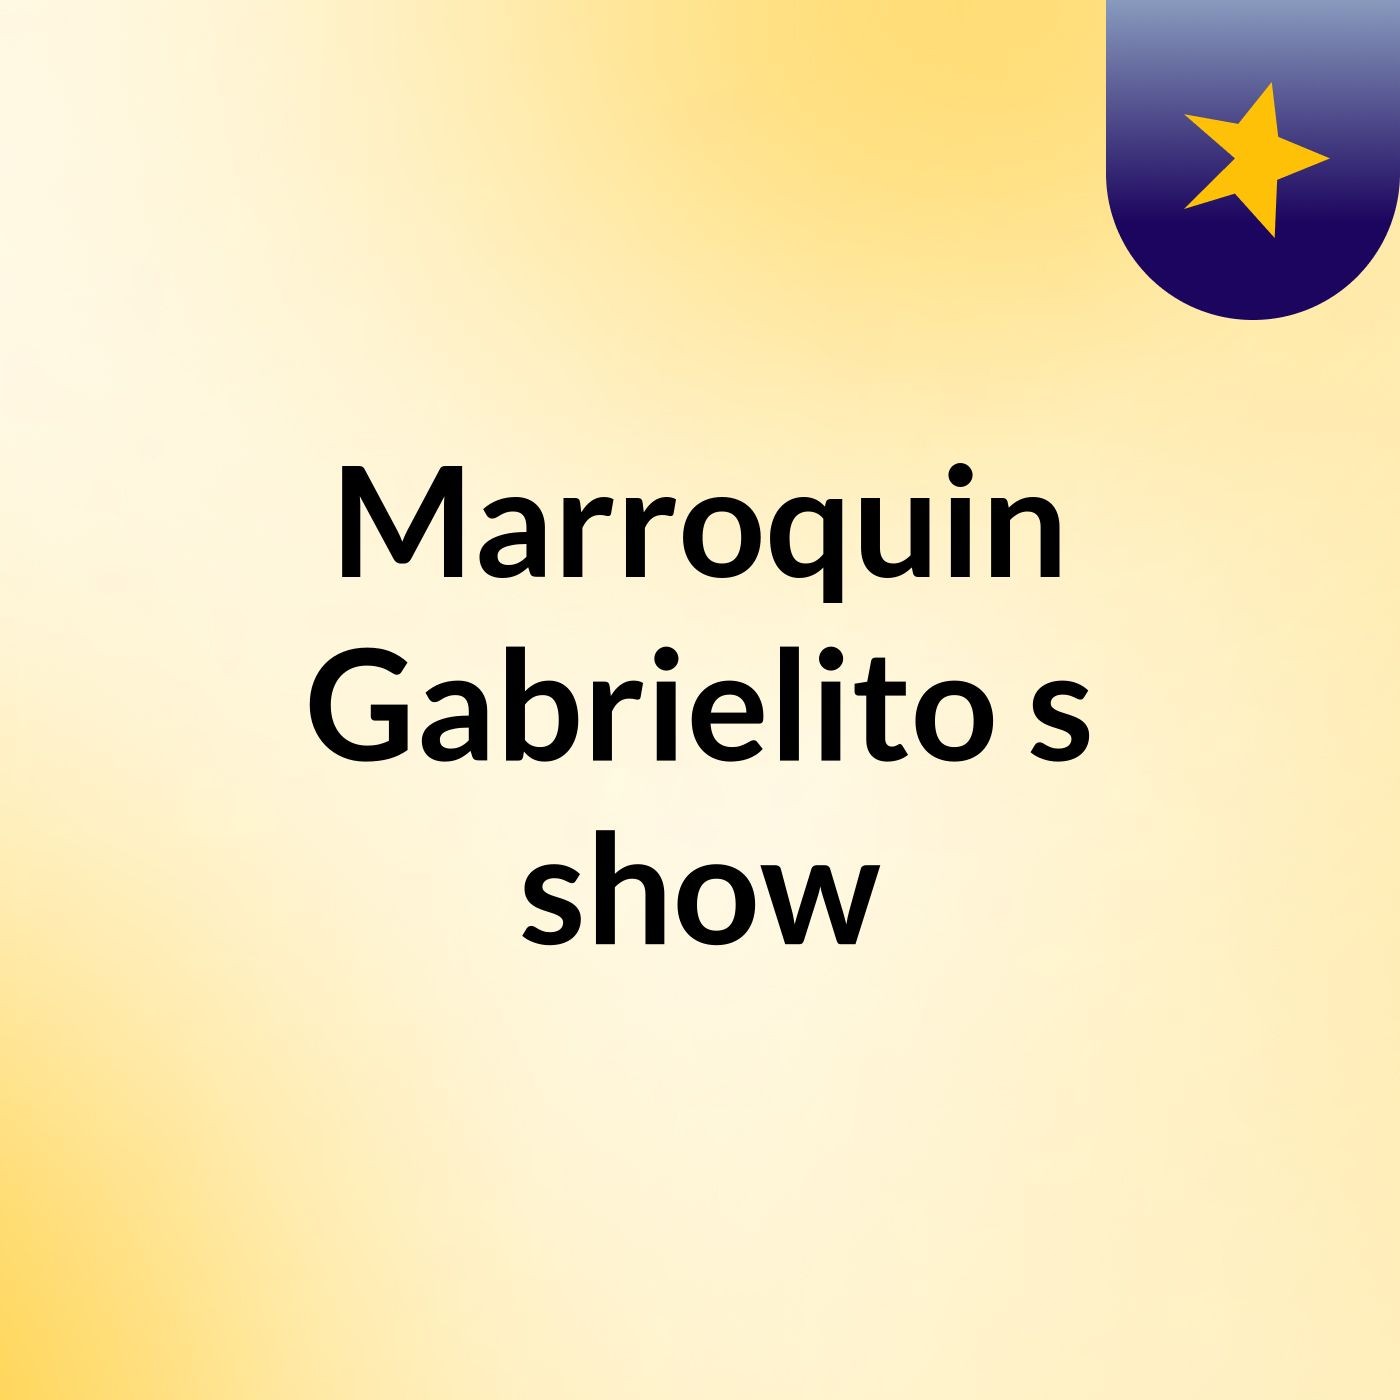 Marroquin Gabrielito's show